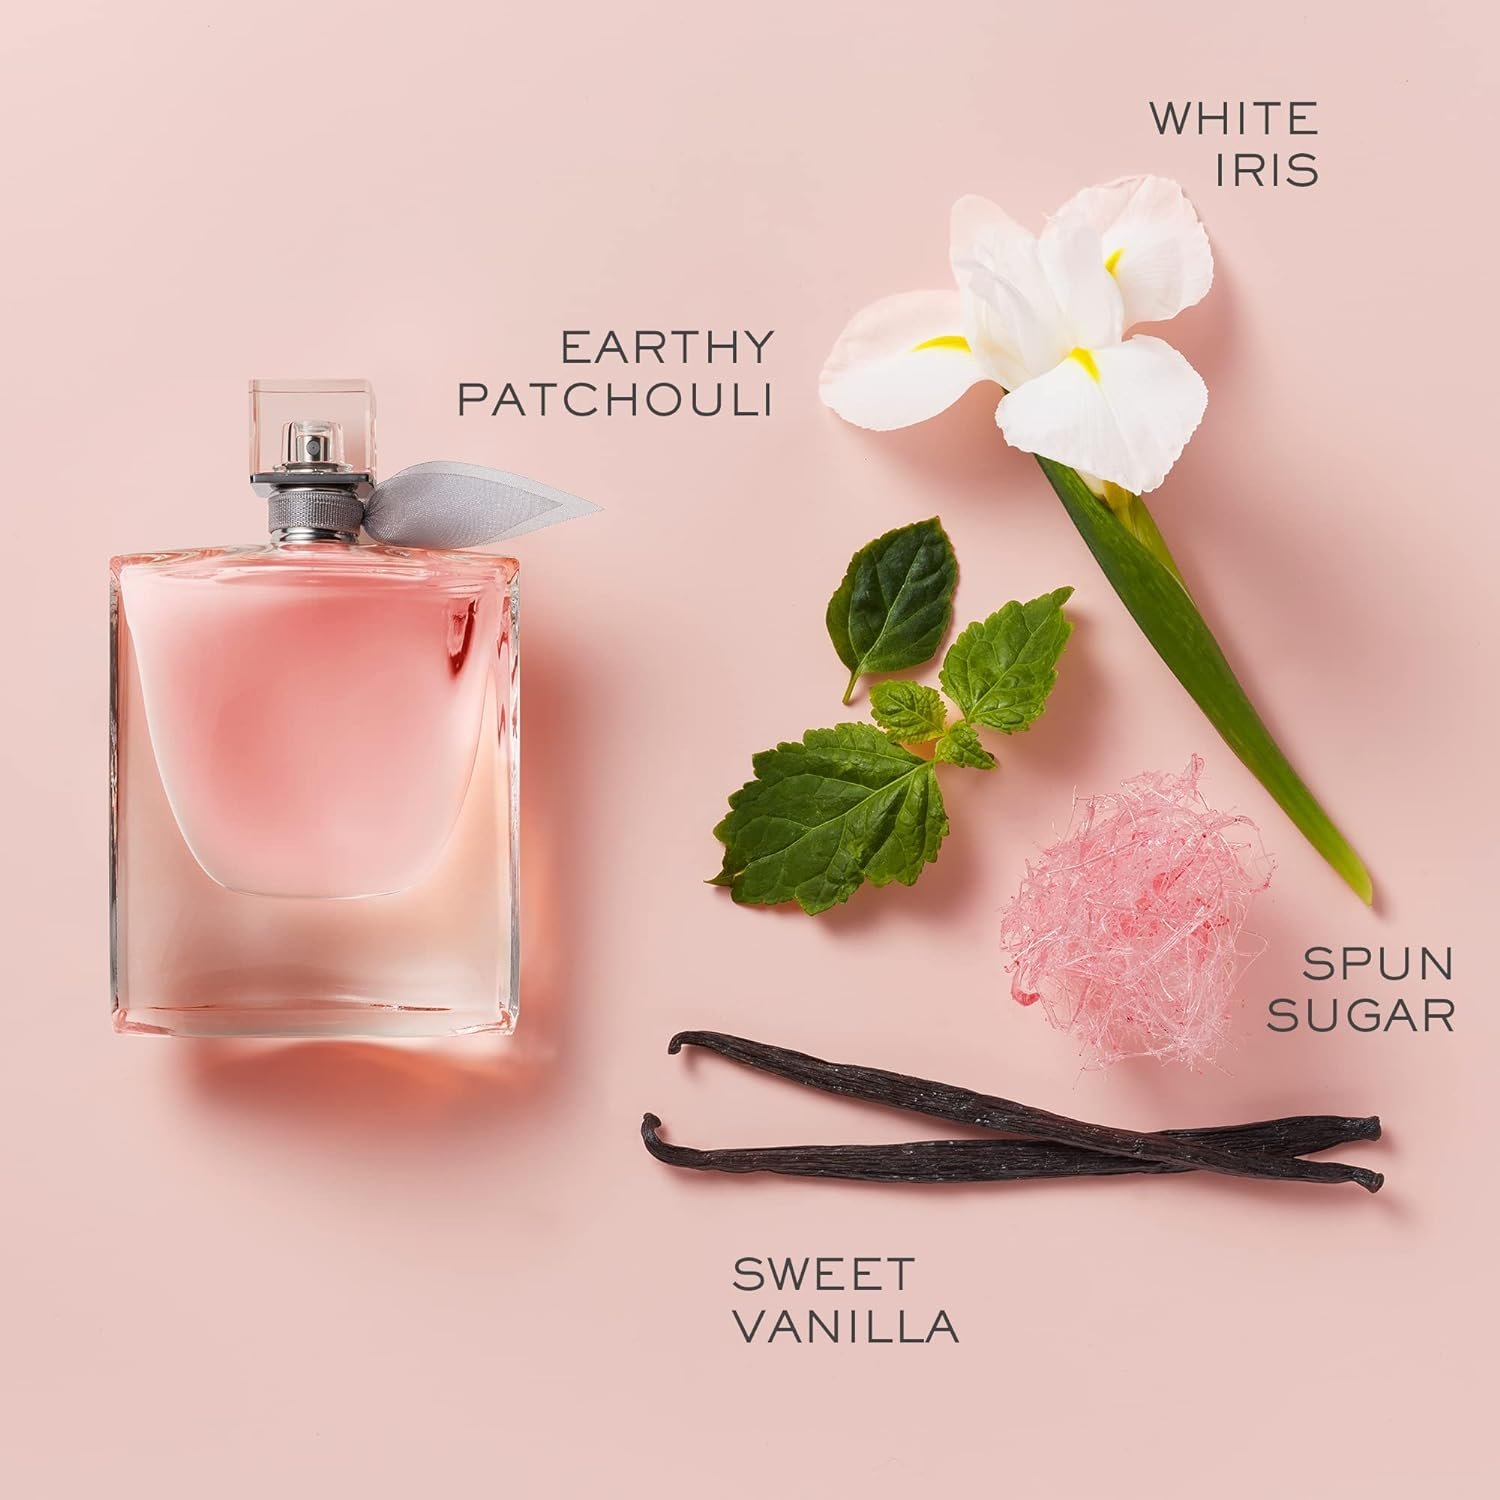 Lancôme La Vie Est Belle Eau de Parfum - Long Lasting Fragrance with Notes of Iris, Earthy Patchouli, Warm Vanilla  Spun Sugar - Floral  Sweet Womens Perfume